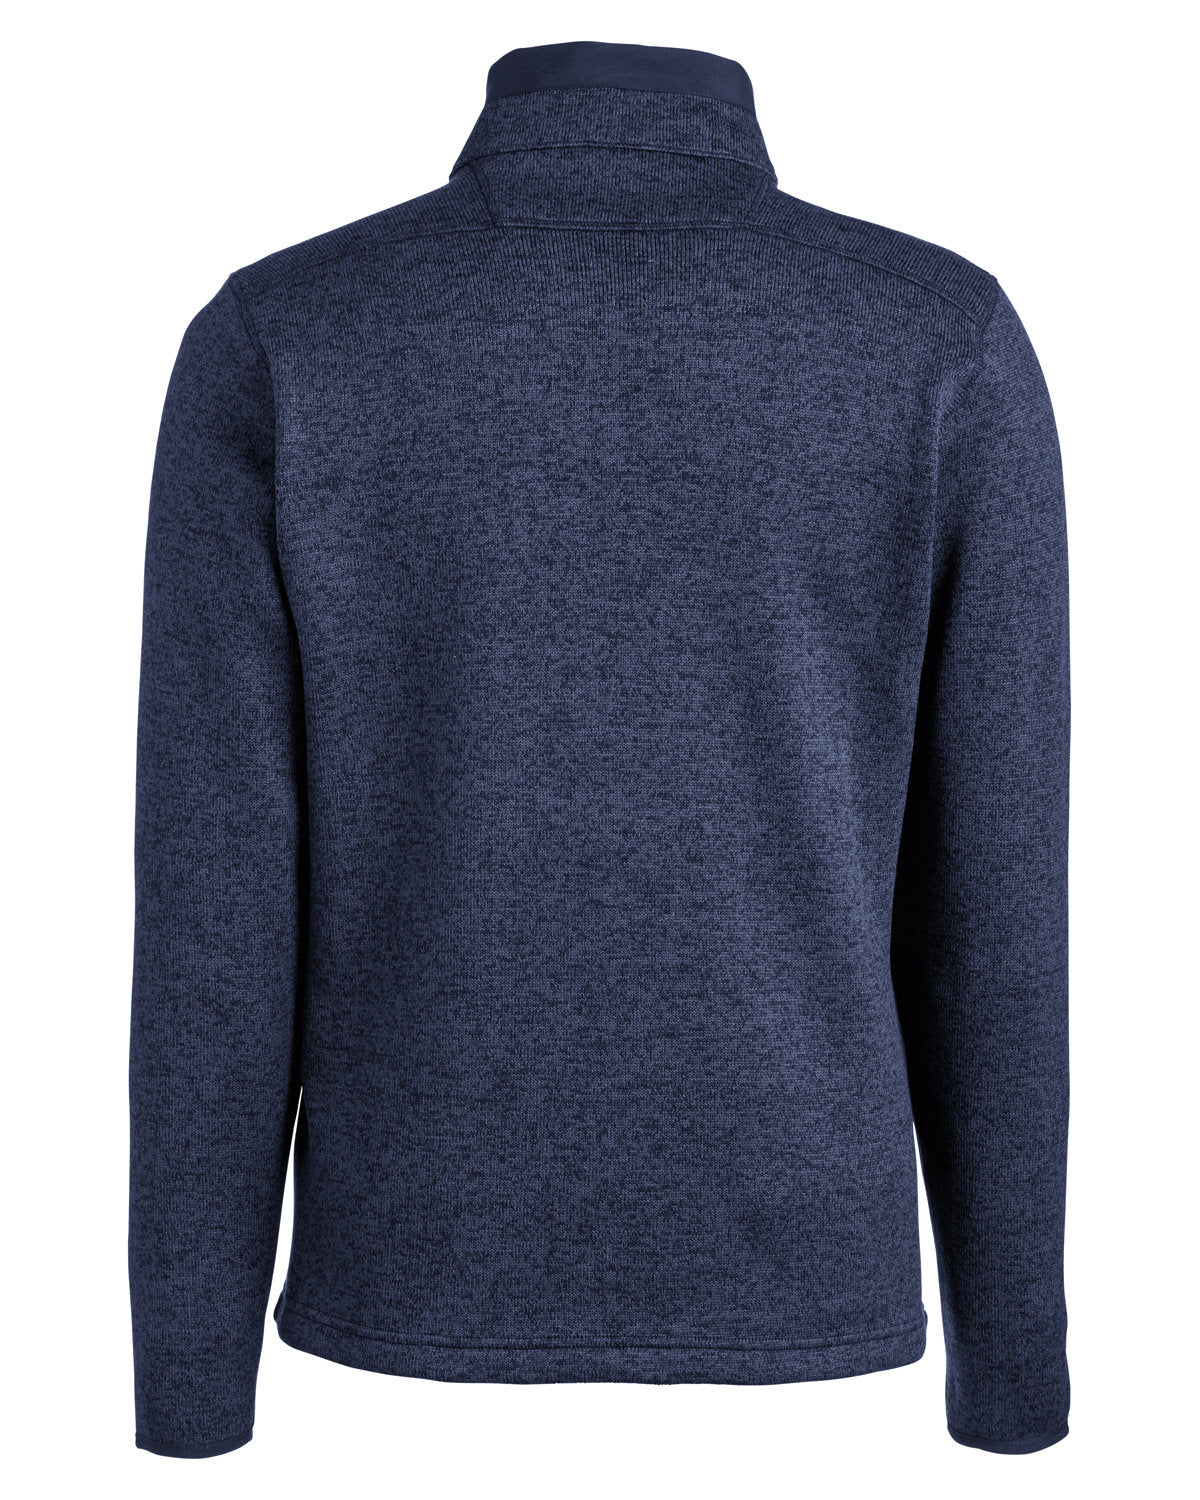 Columbia Men's Sweater Weather Half-Zip